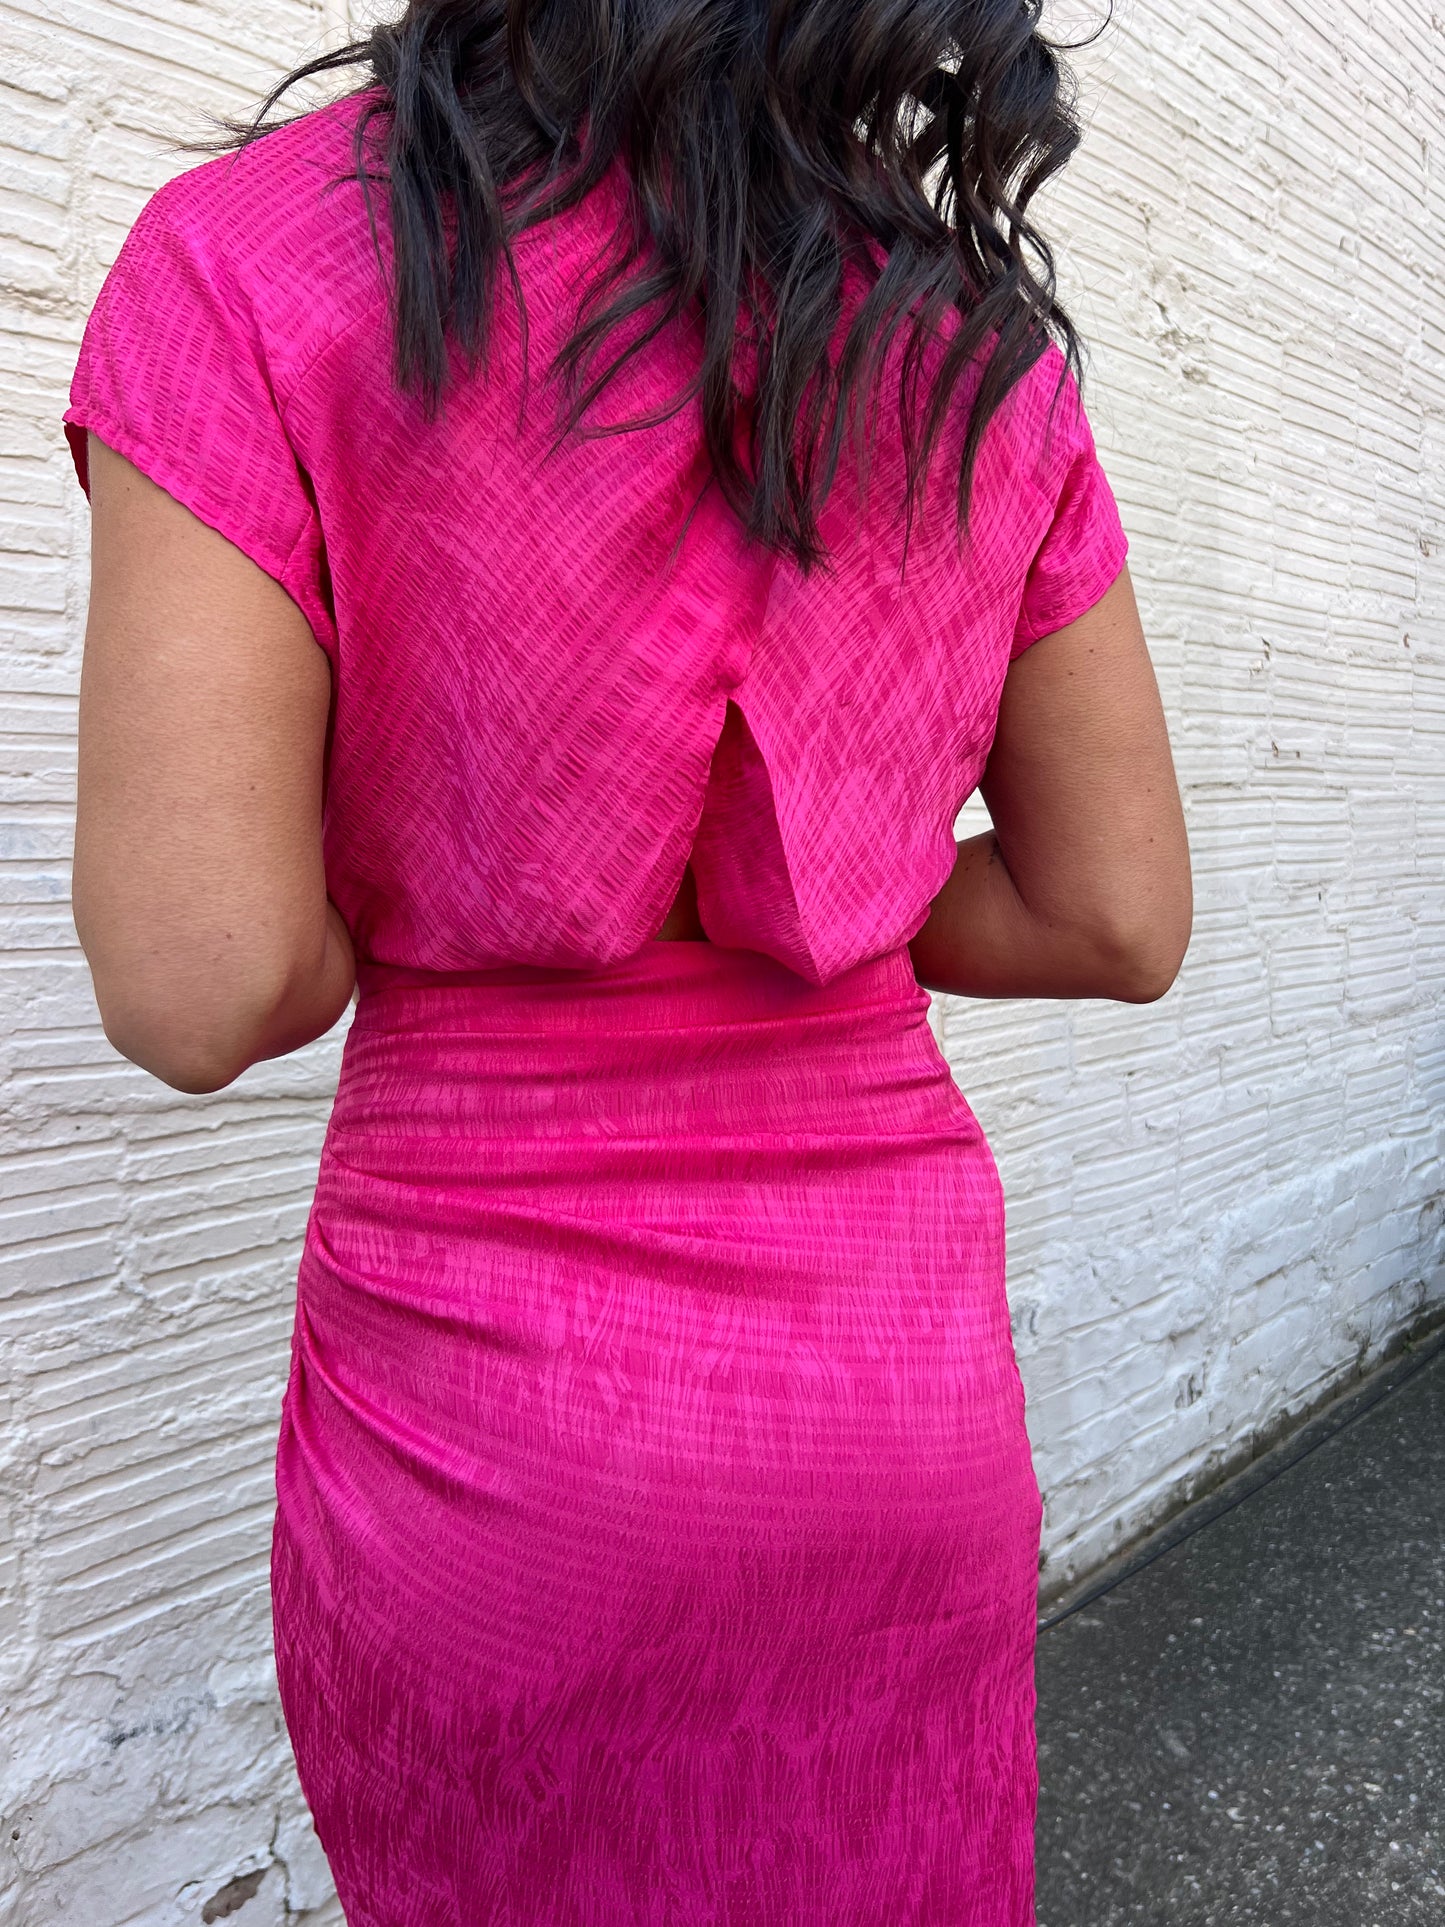 textured pink dress